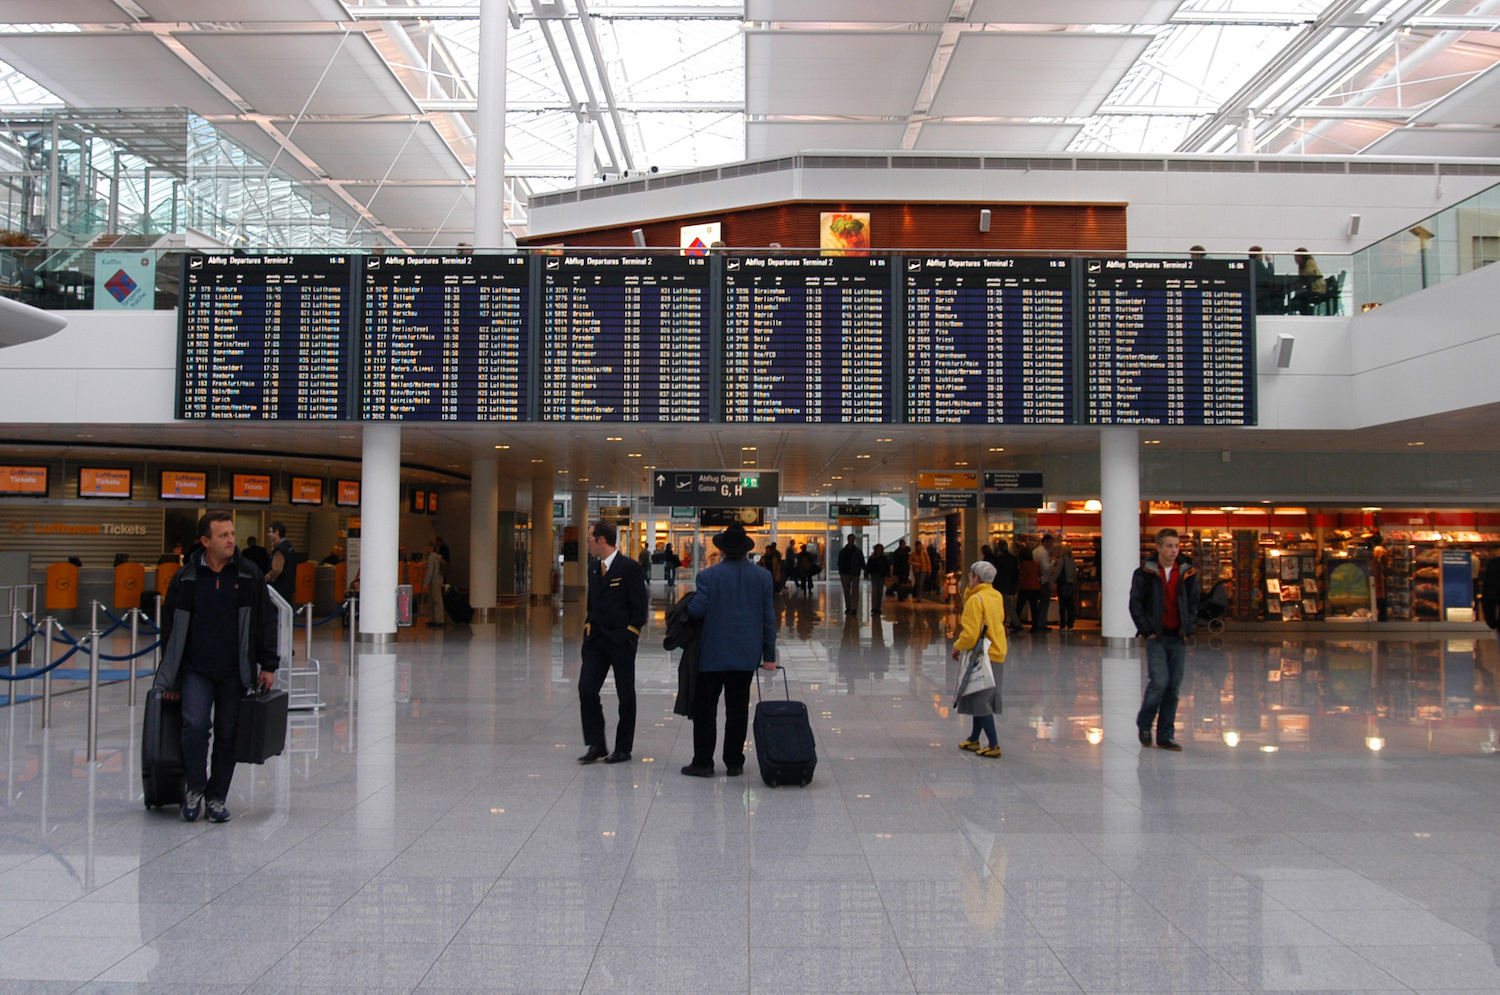 Während der verlängerten Weihnachtsferien dürfte es wieder deutlich voller werden am Flughafen München – viele Reisende wollen über die Feiertage in den Urlaub fliegen. Foto: Adobe Stock